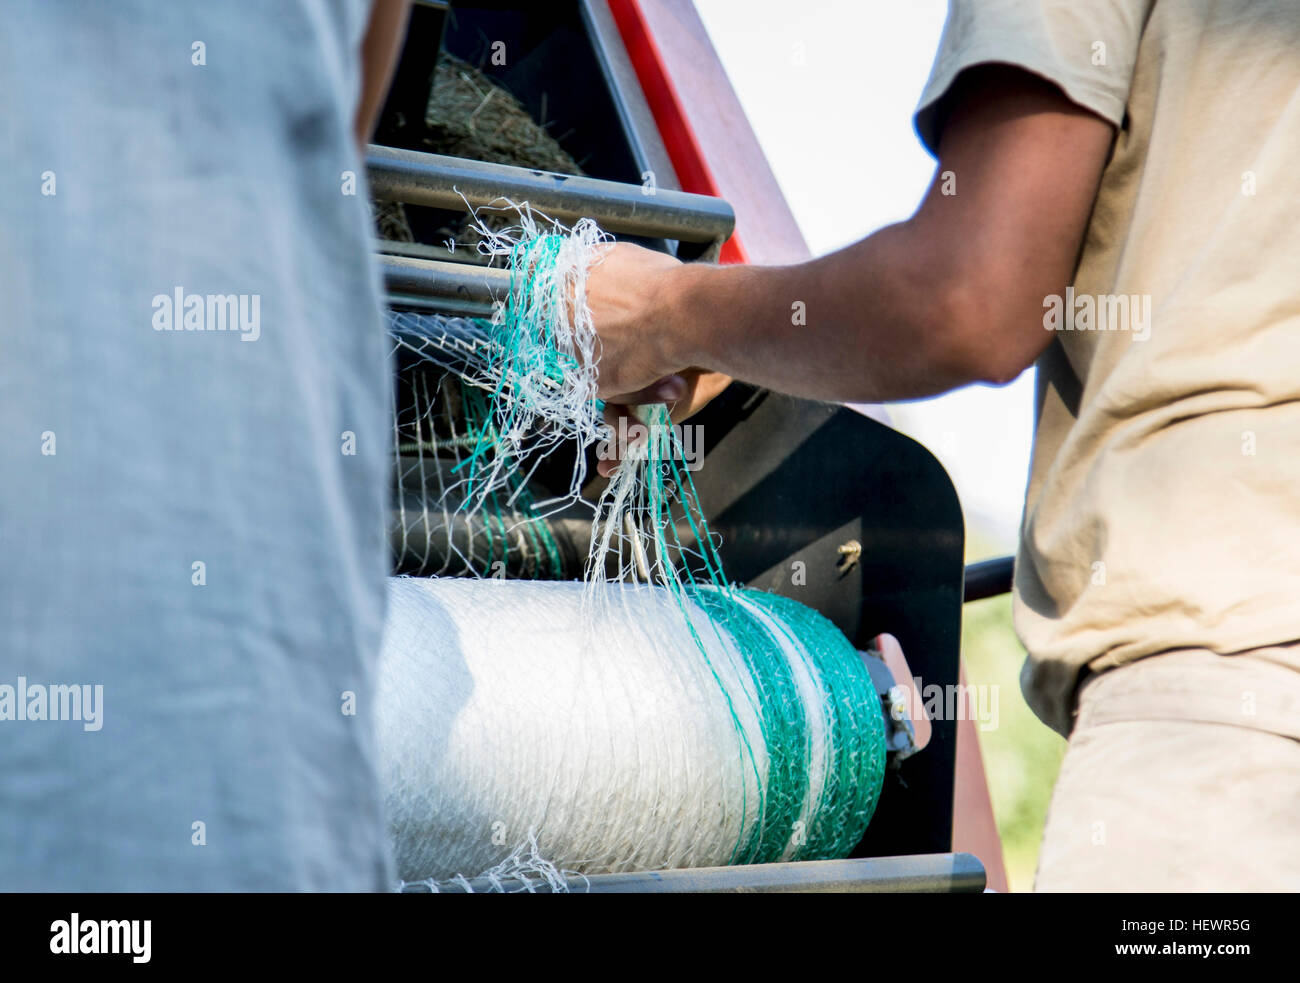 Aufnahme von zwei männlichen Landarbeitern entwirren Netting im Heu Ballenpresse beschnitten Stockfoto